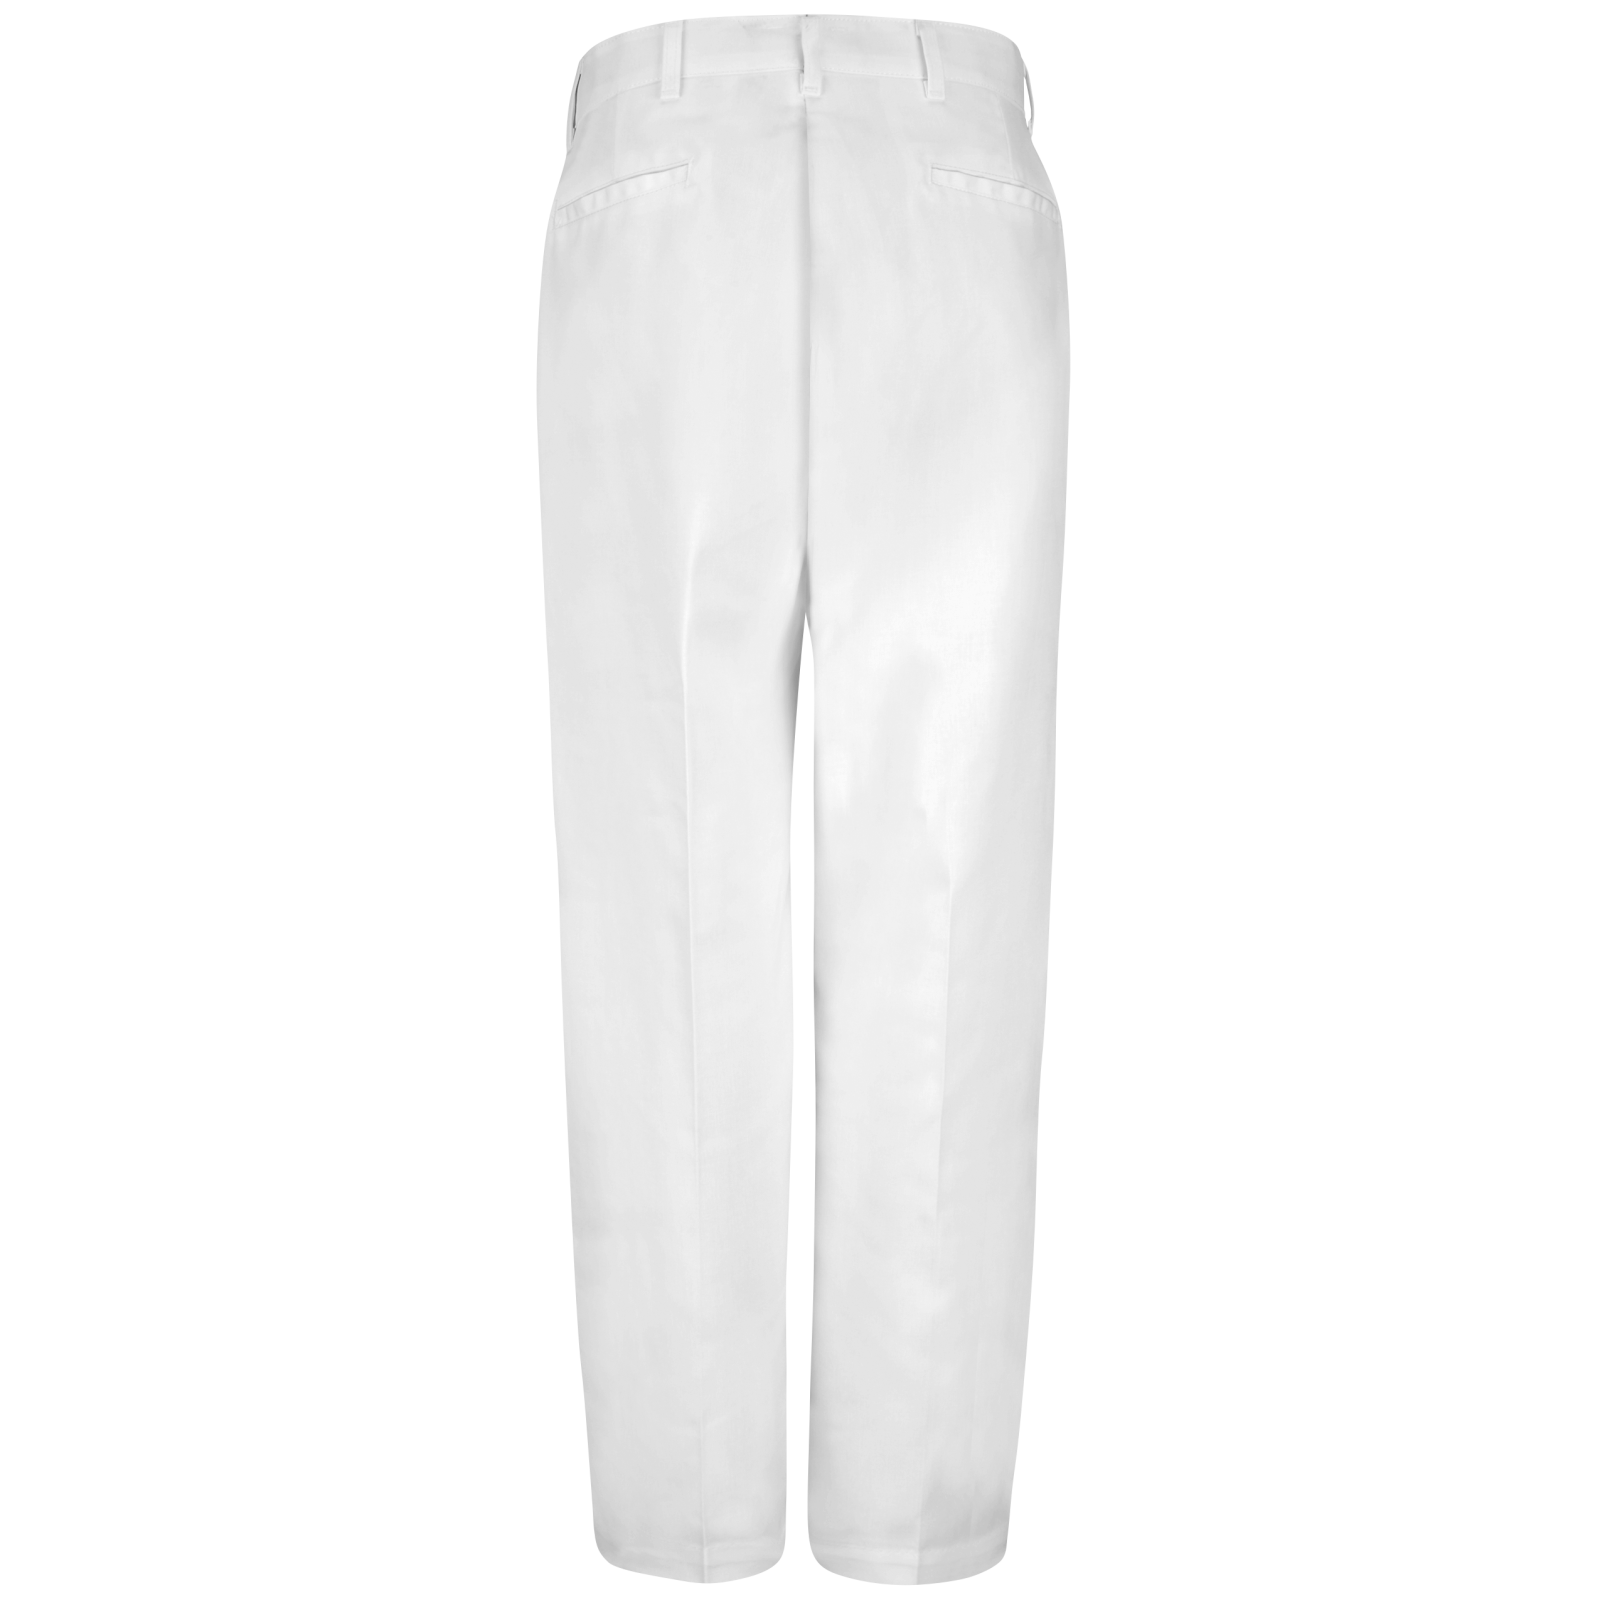 Men's Command 100% Polyester Pants (37100) - Parr PSE